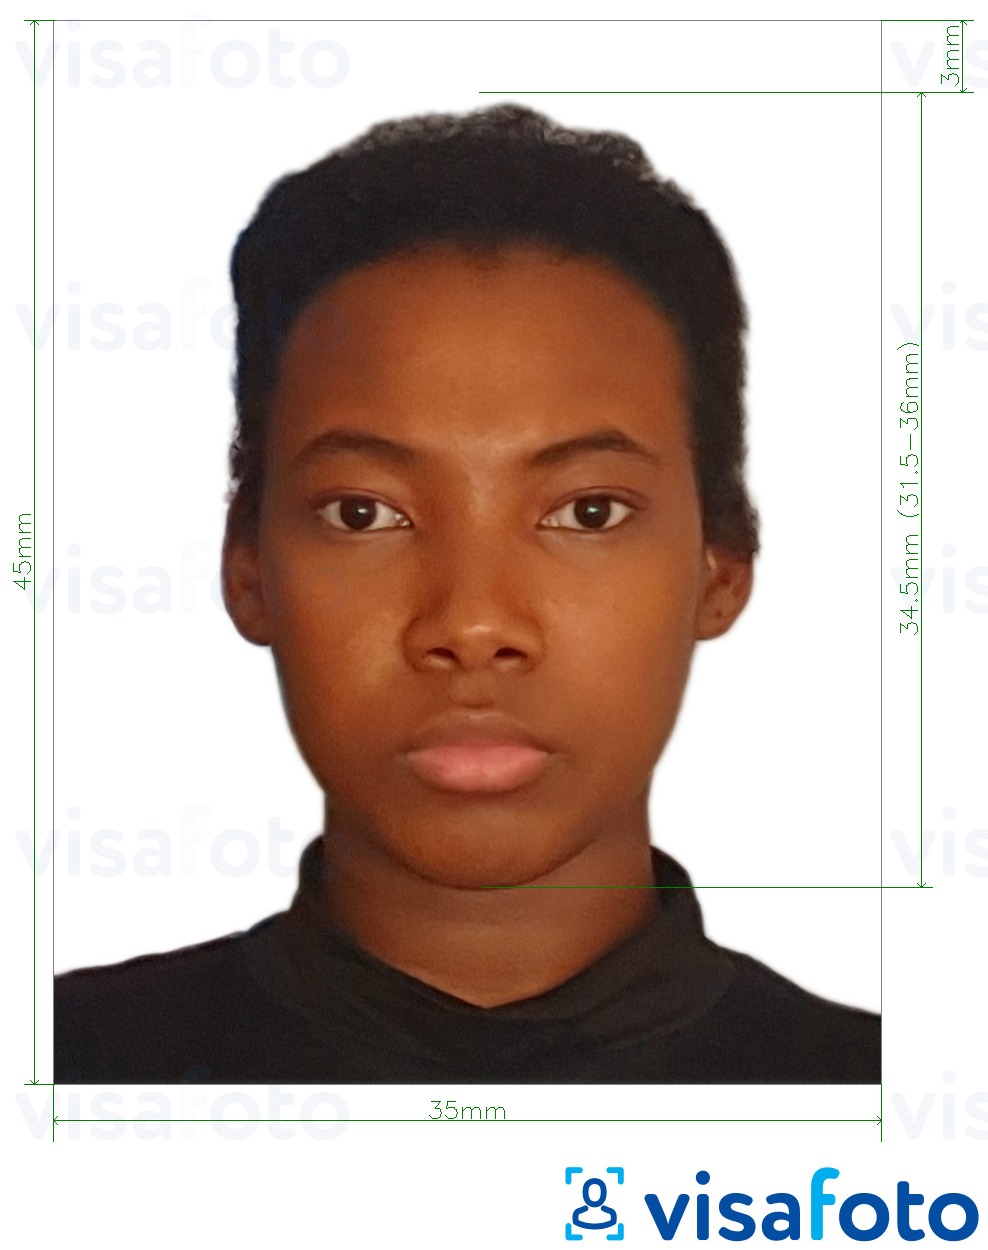 Przykład zdjęcia dla Paszport Burkina Faso 4,5x3,5 cm (45 x 35 mm) z podaniem dokładnego rozmiaru.